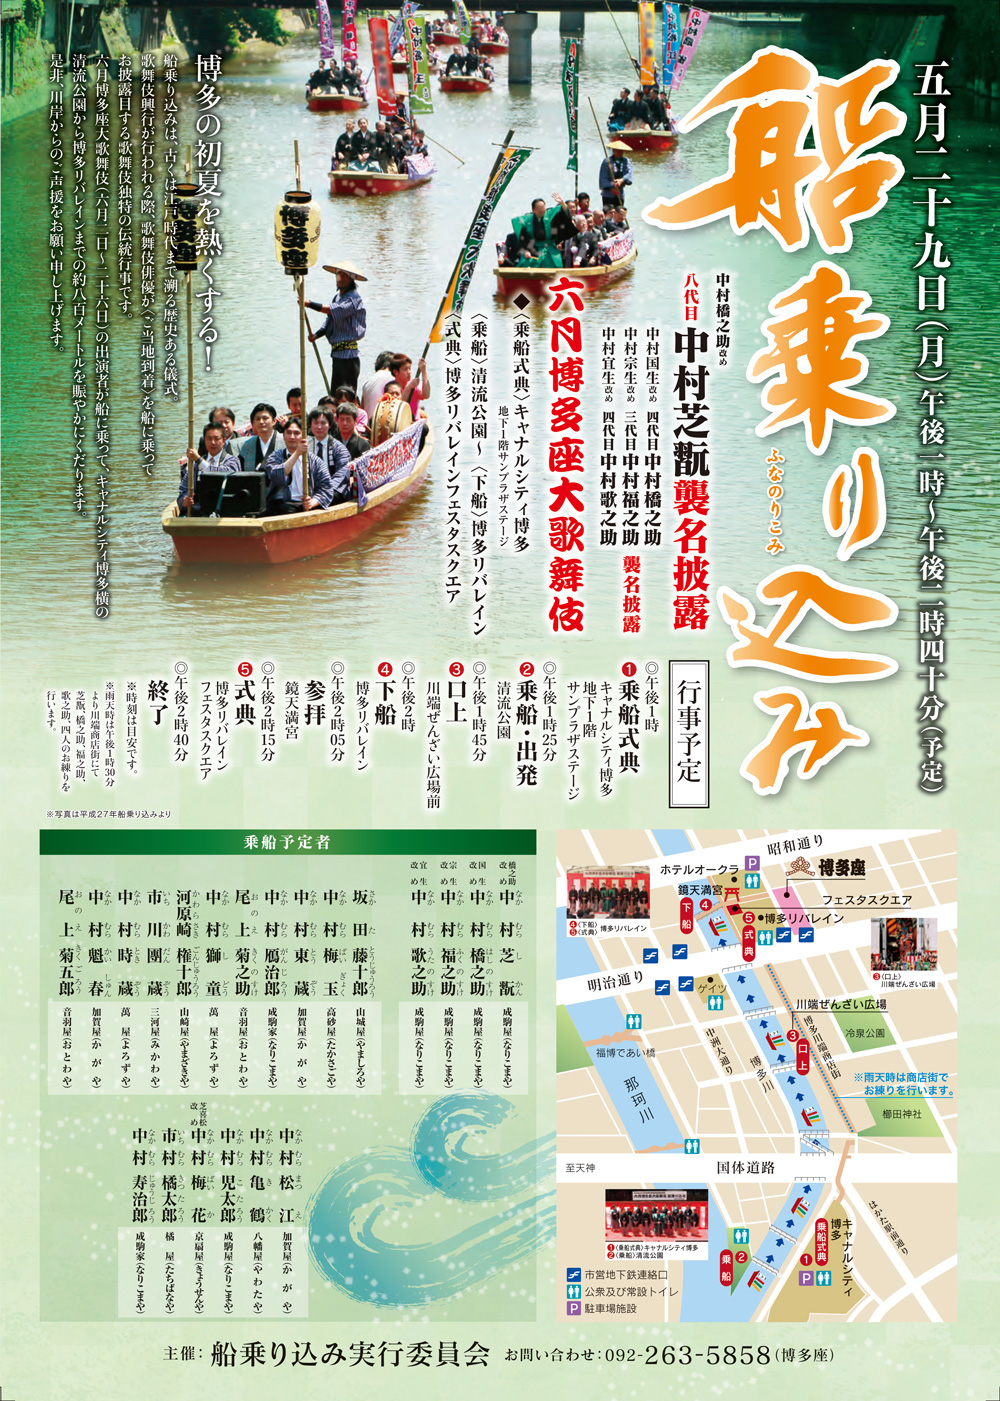 5月29日「六月博多座大歌舞伎」船乗り込みのお知らせ